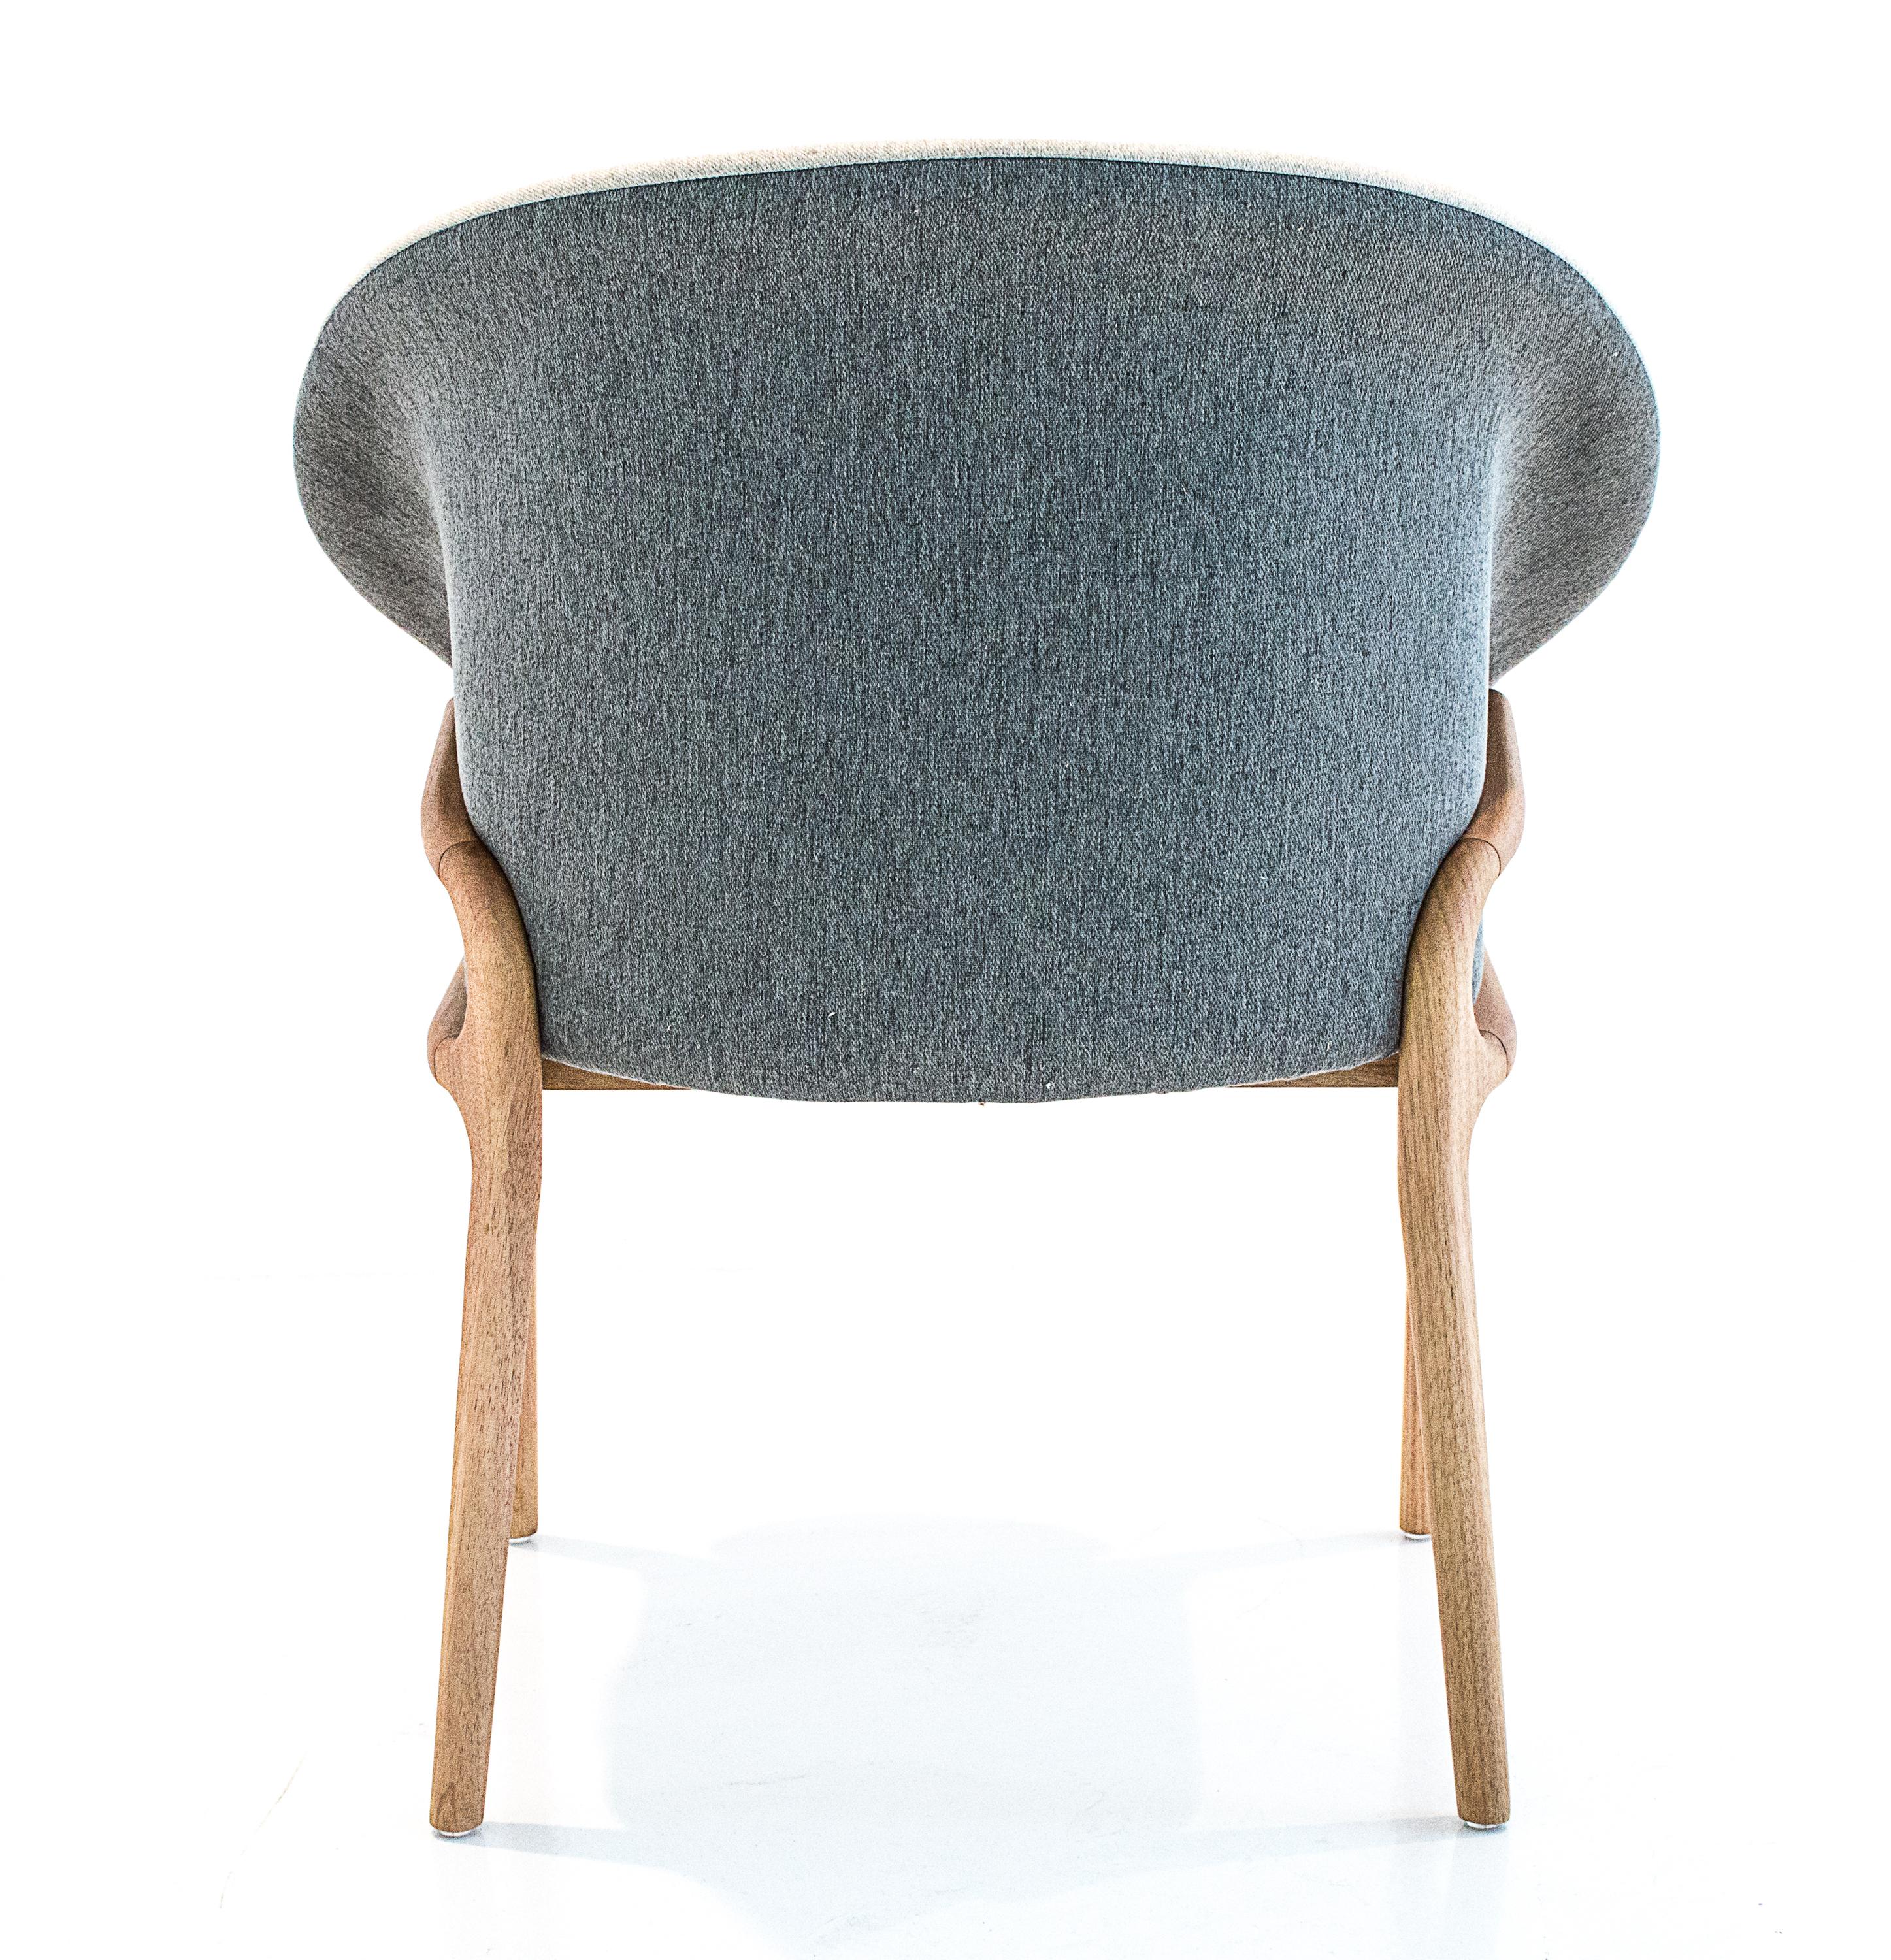 Moderne Chaise organique moderne en bois massif, assise flexible tapissée en vente